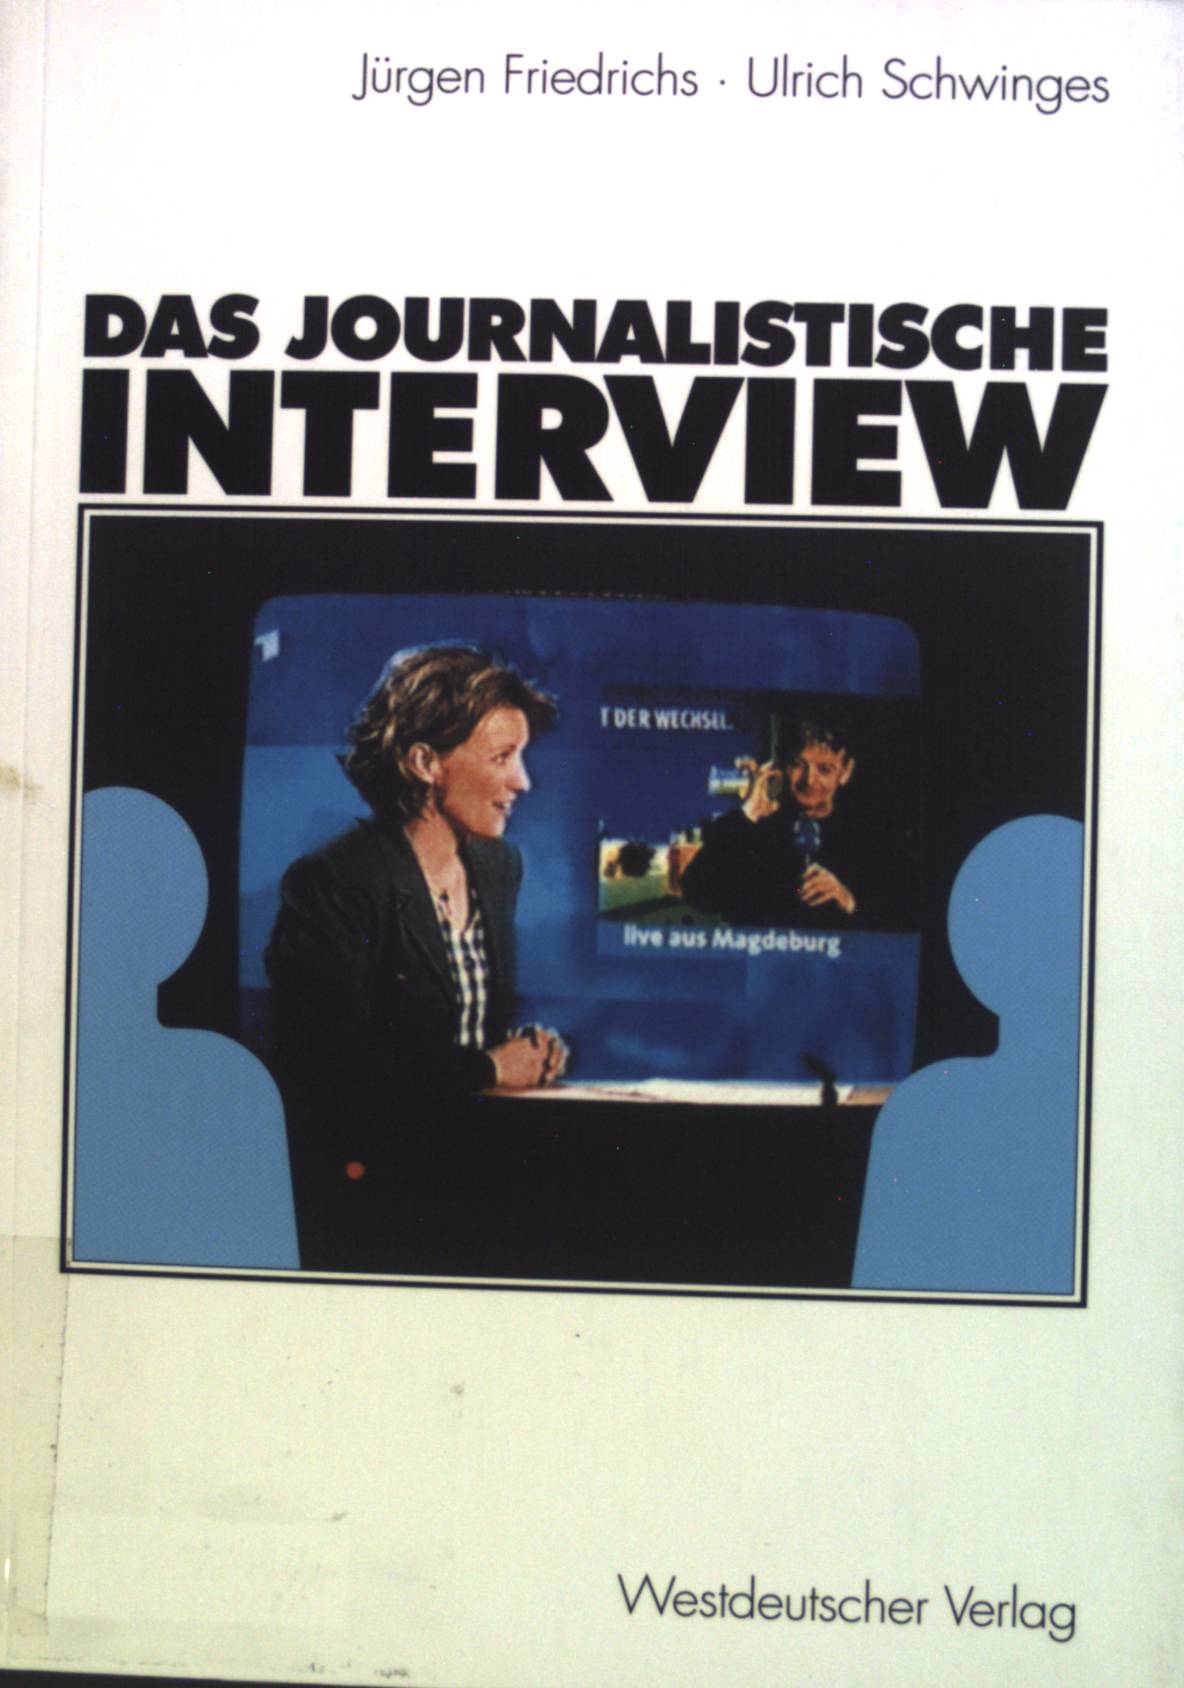 Das journalistische Interview. - Friedrichs, Jürgen und Ulrich Schwinges